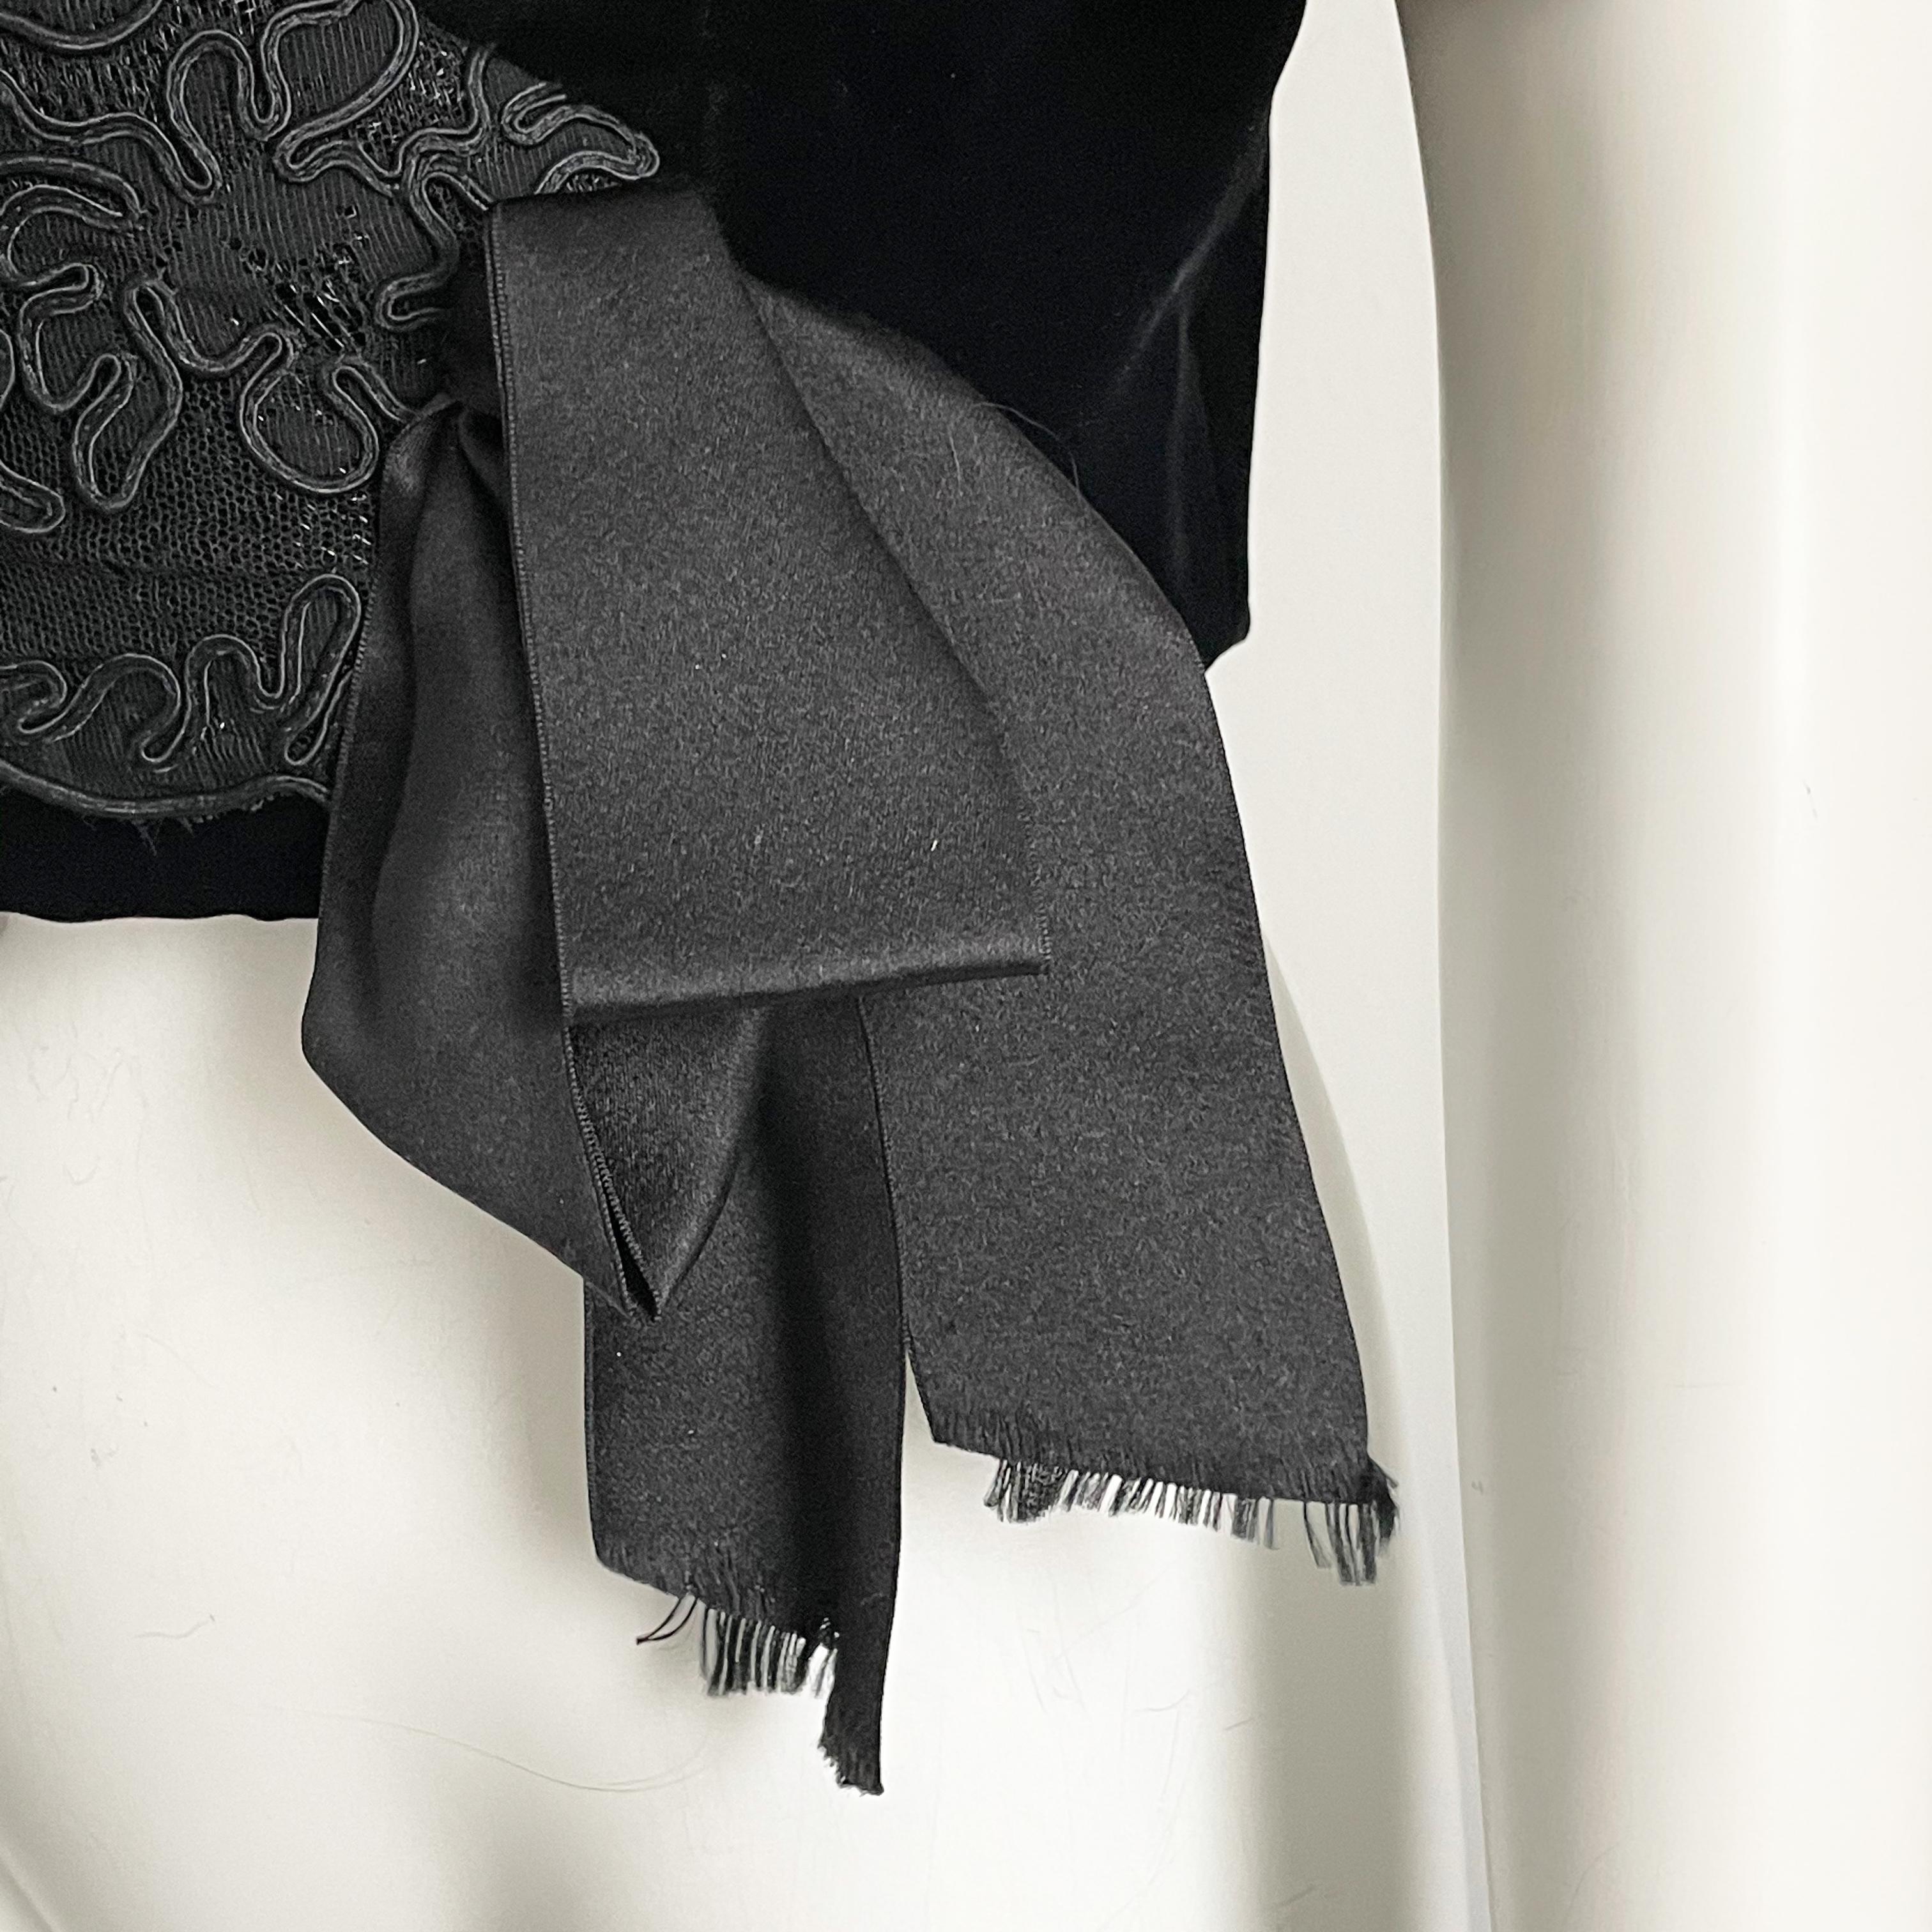 Jacqueline de Ribes Jacket Bolero Cropped Formal Couture Black Lace Velvet  For Sale 2